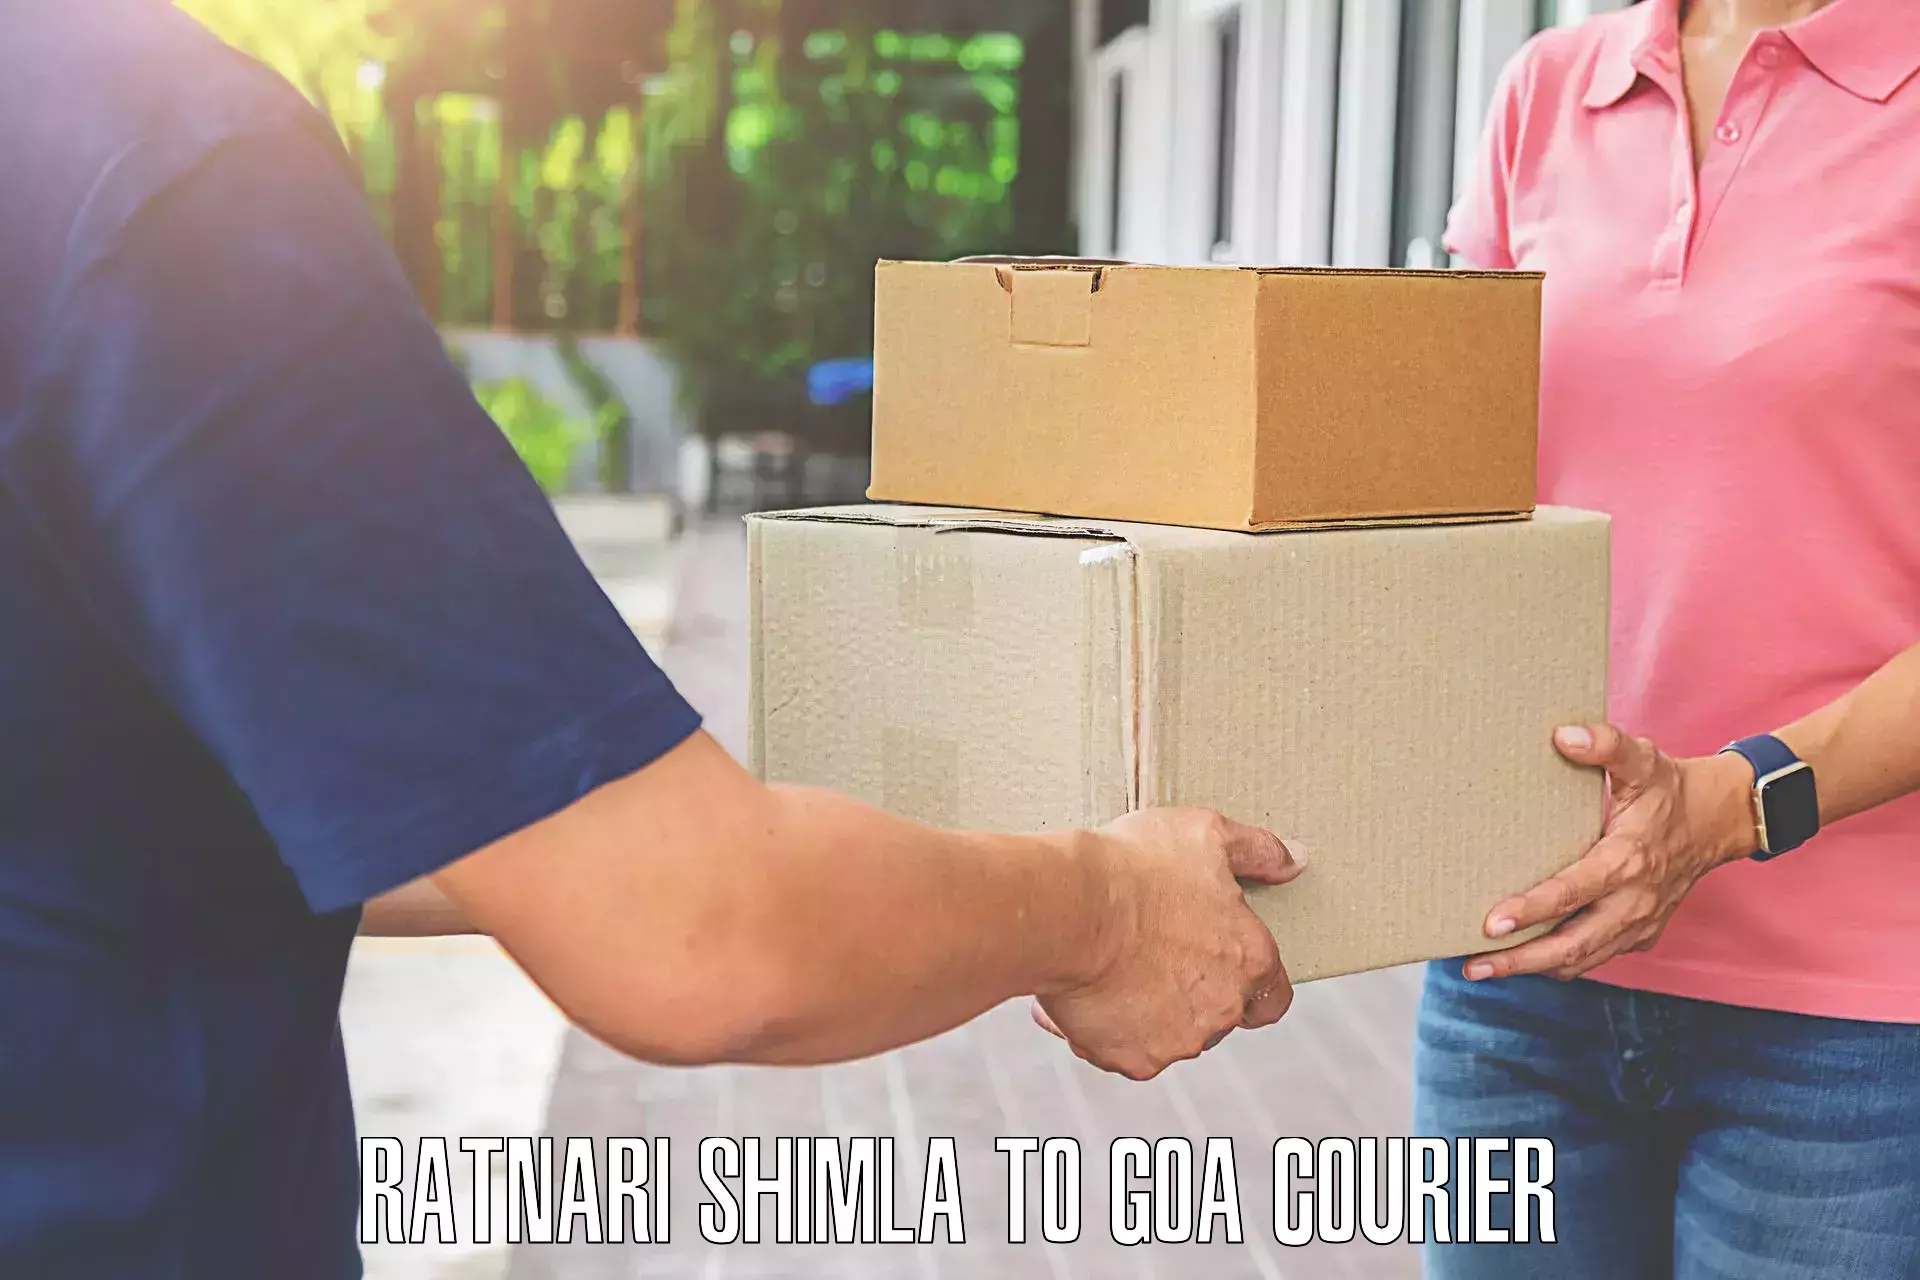 Nationwide luggage courier Ratnari Shimla to IIT Goa